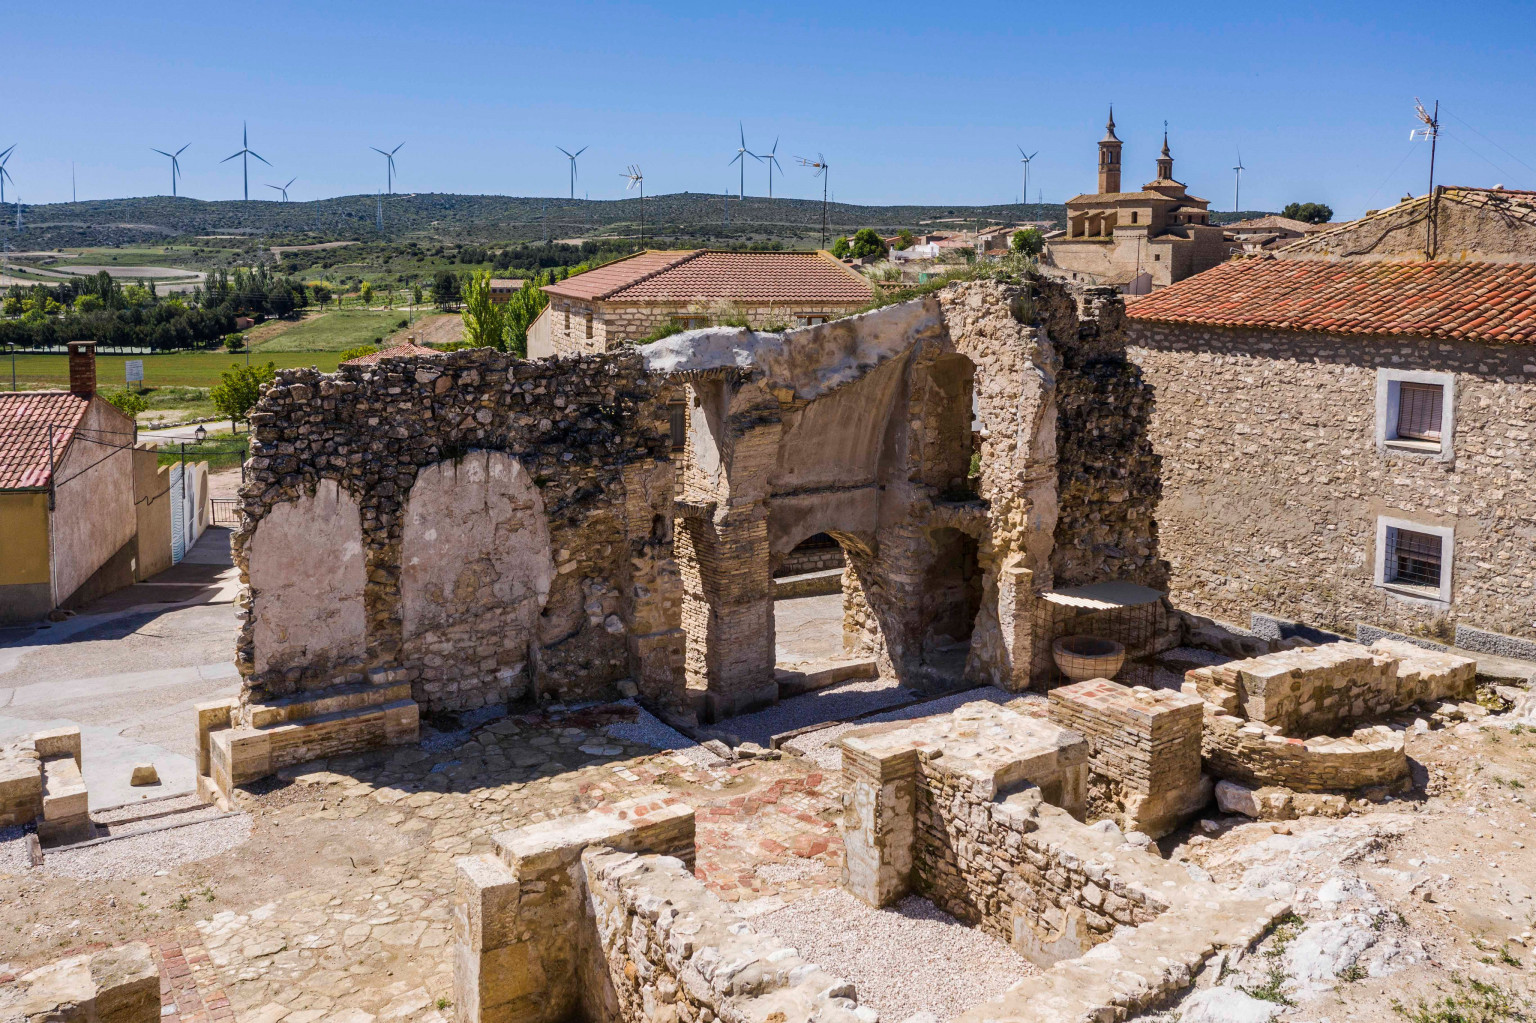 La llamada iglesia hundida de Fuendetodos, templo románico